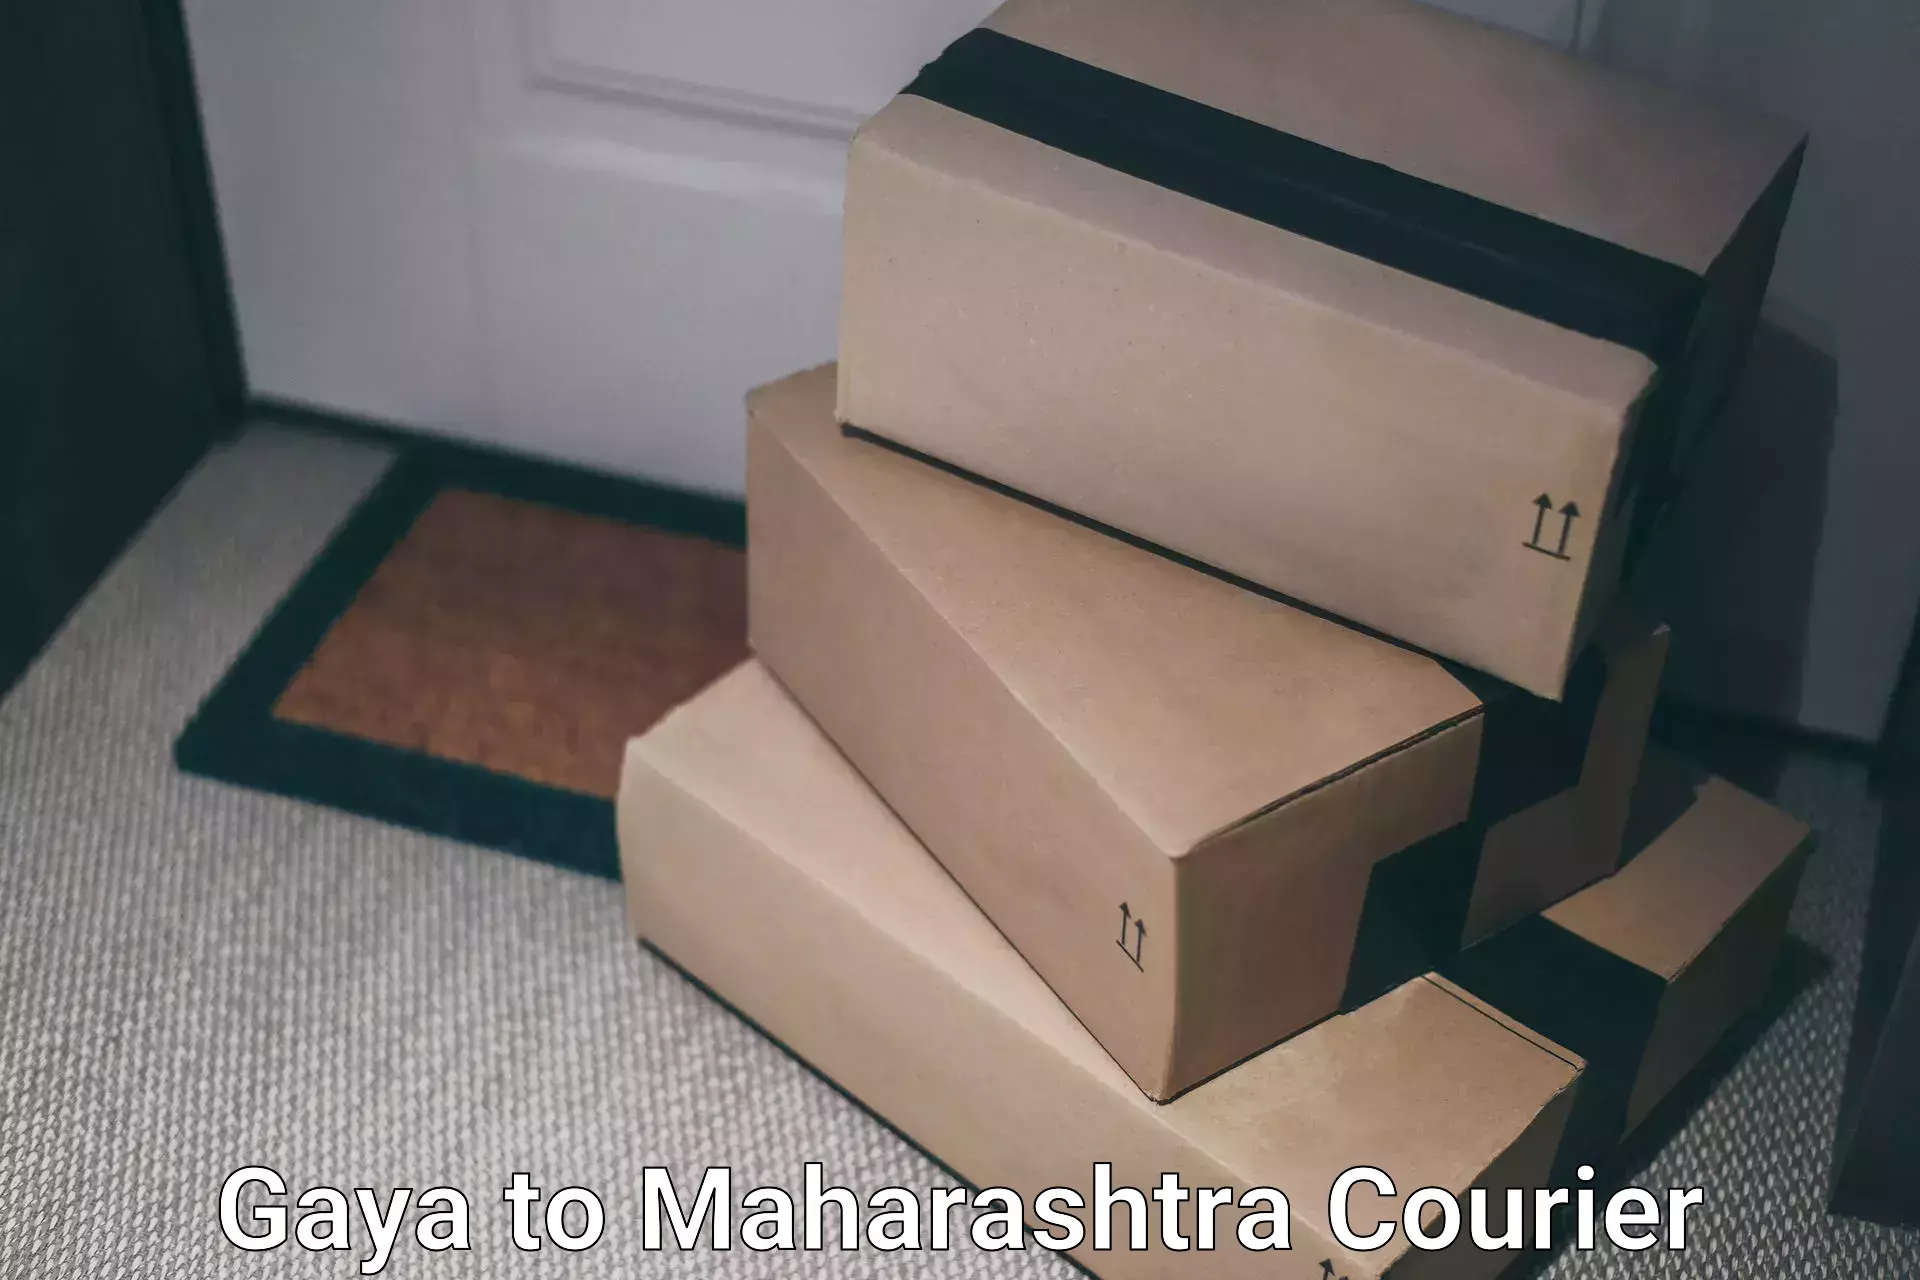 Courier service comparison Gaya to Rajapur